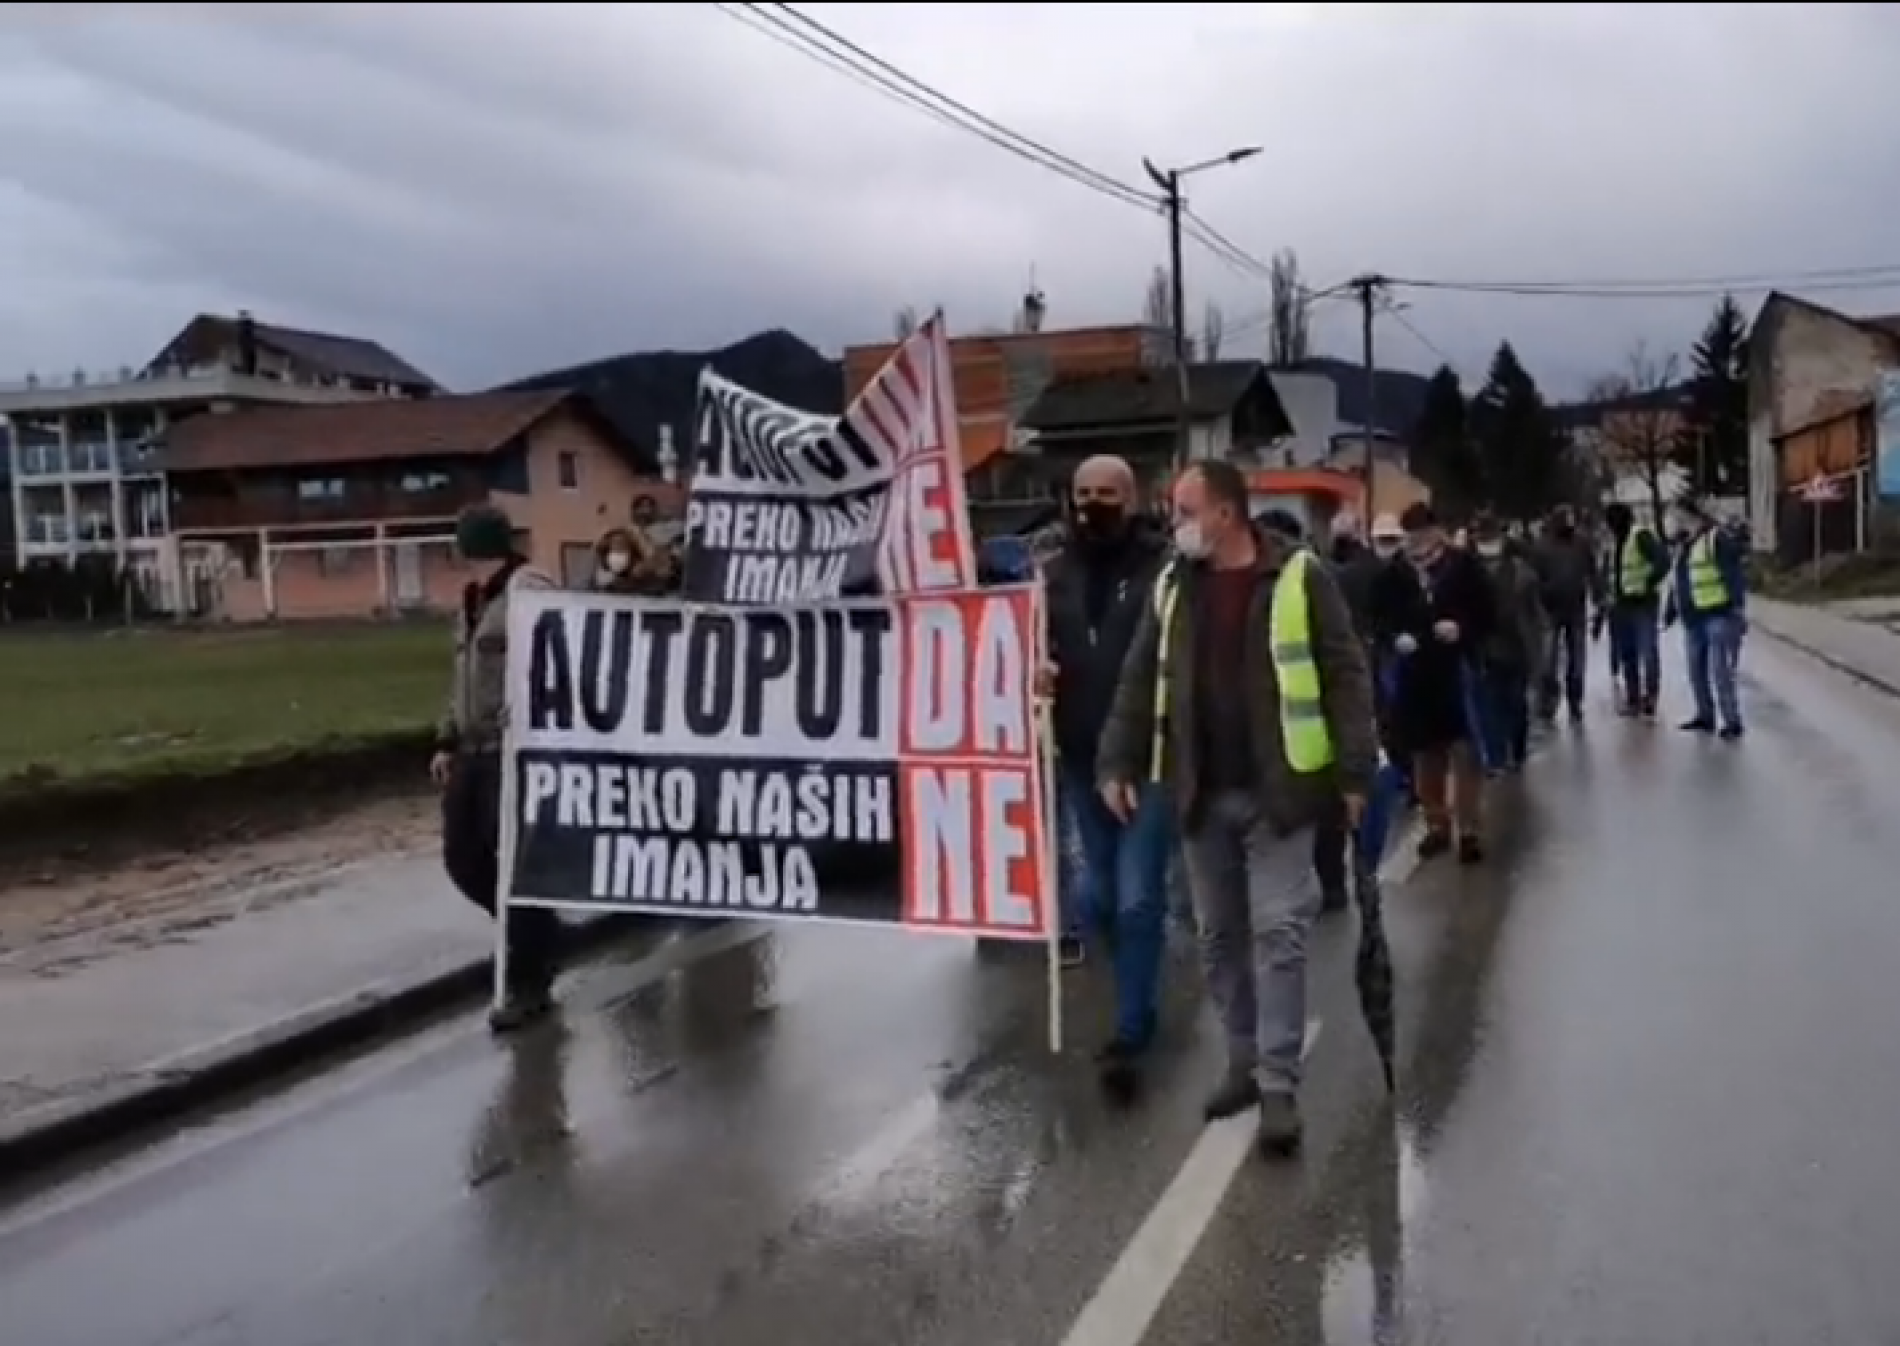 Protesti u Kozarcu: Autoput – DA, preko naših imanja – NE!